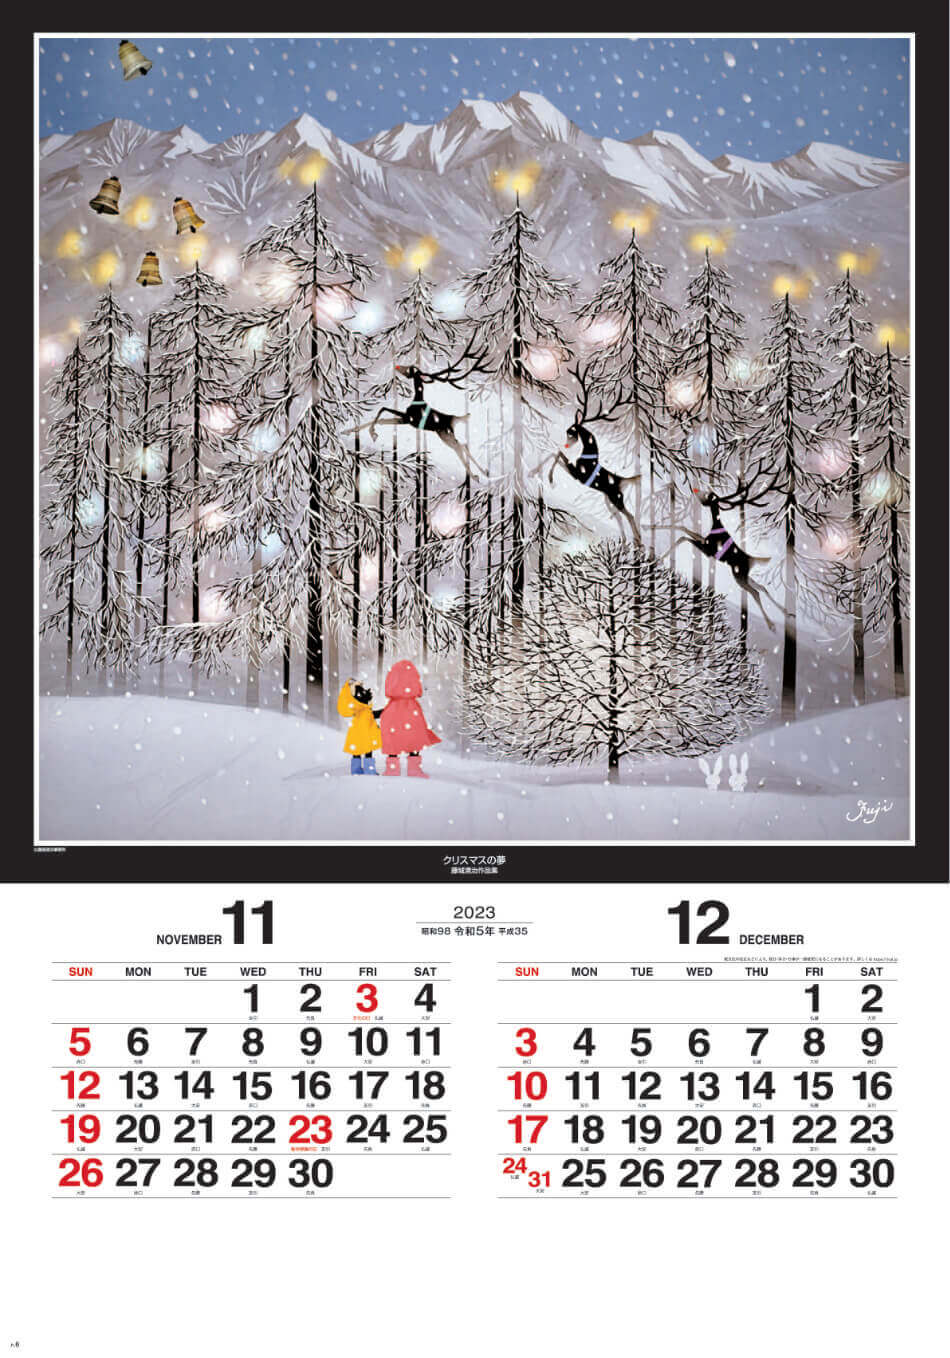 SG-508 遠い日の風景から(影絵) -藤城清治- (フィルムカレンダー) 2023年カレンダー